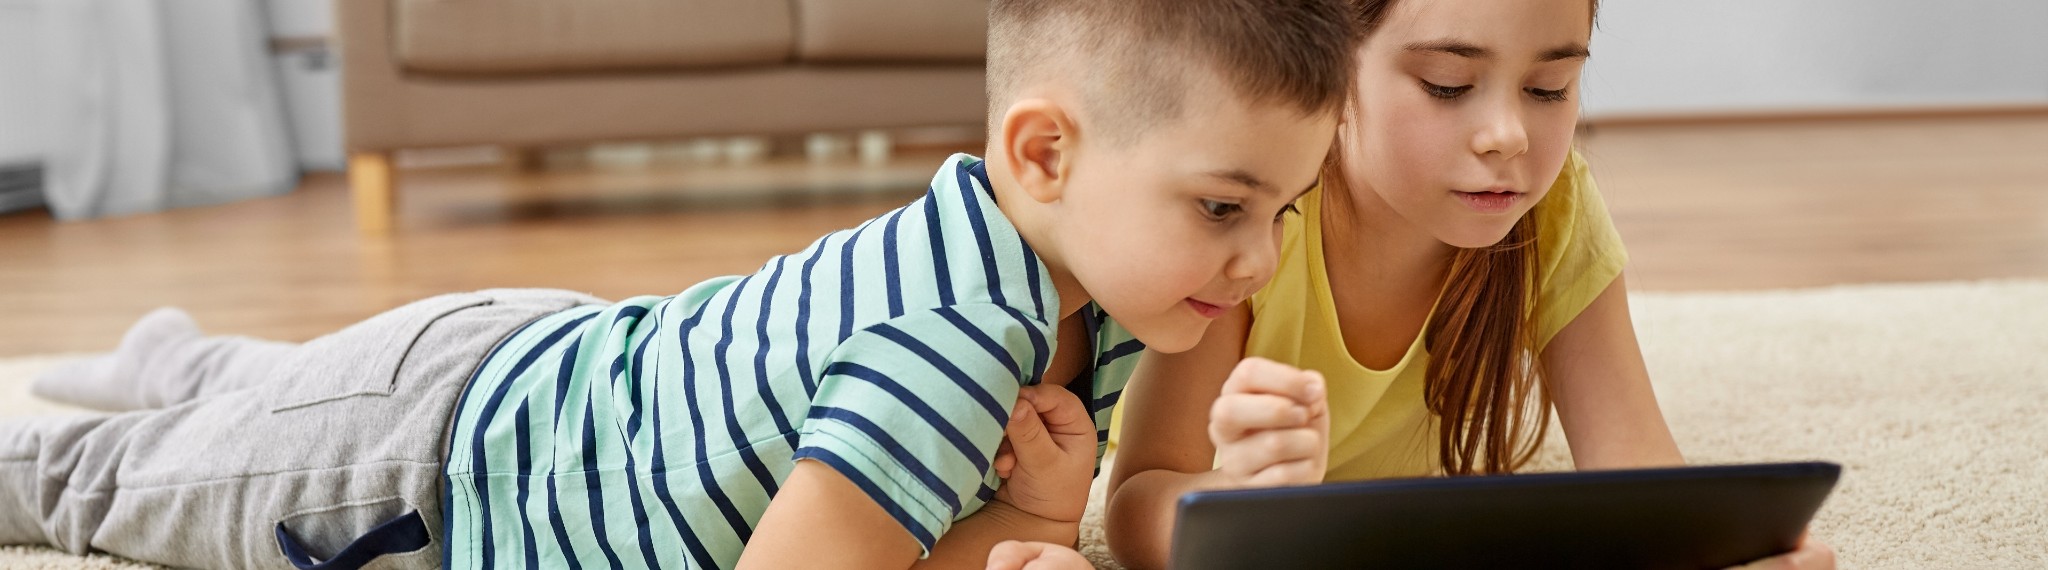 Emociones, juegos y seguridad digital en niños preescolares